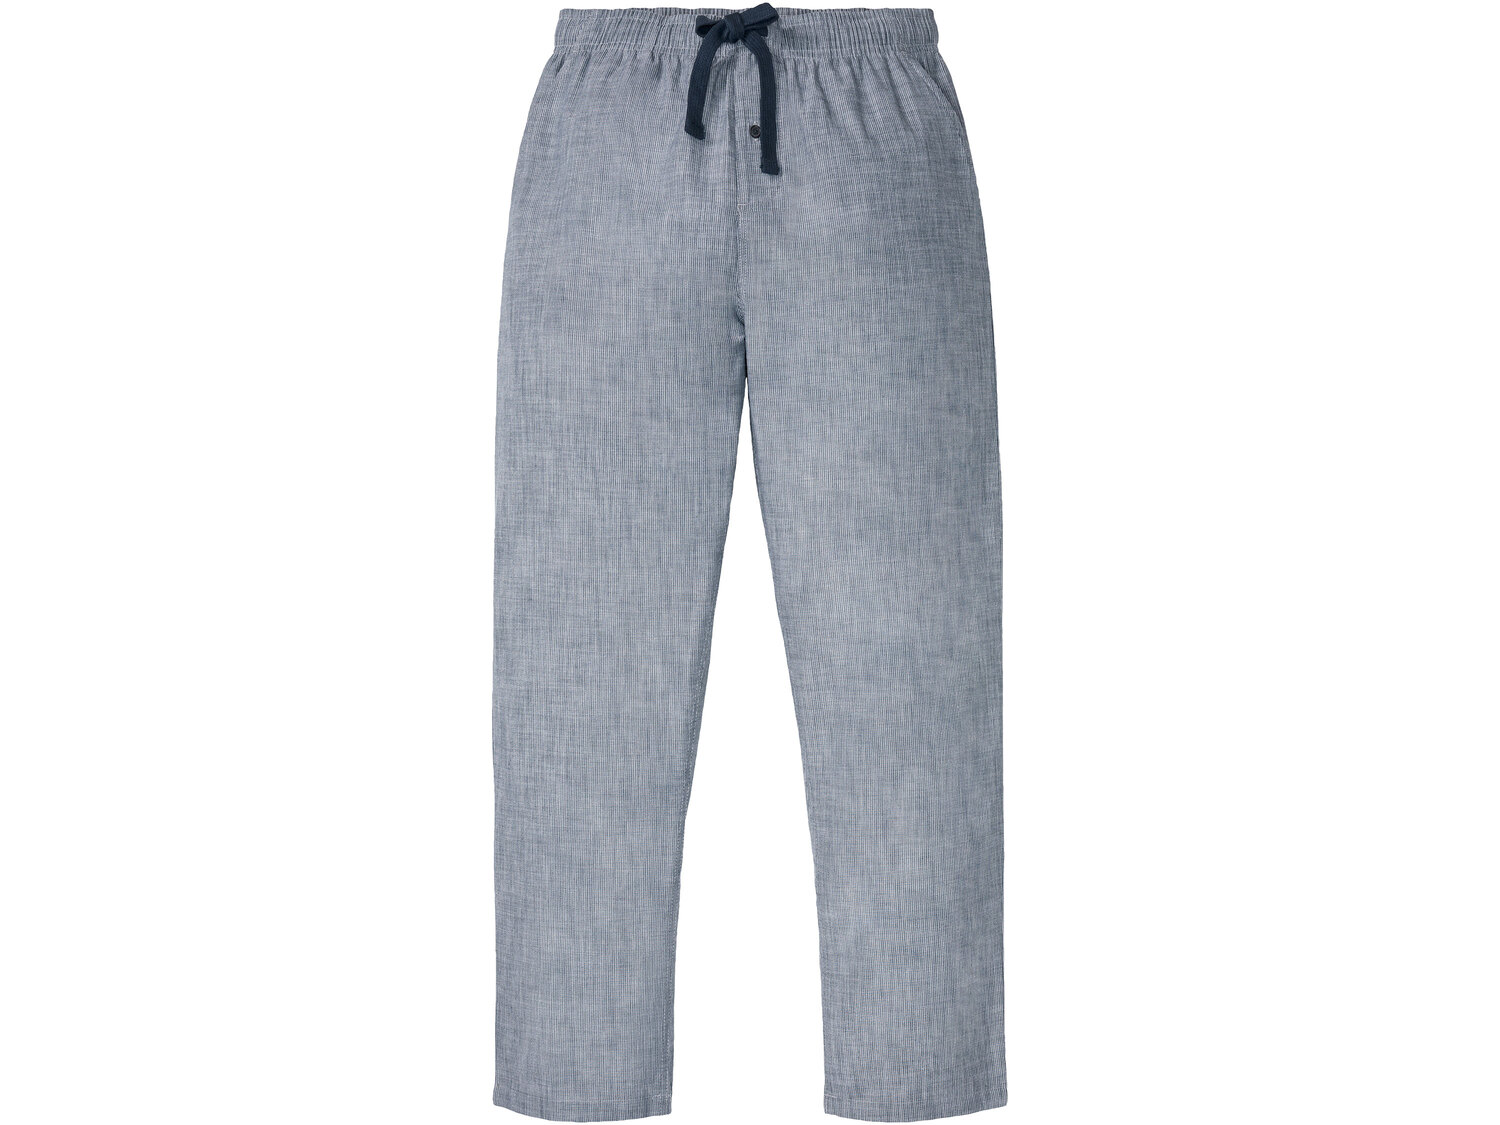 Piżama męska , cena 39,99 PLN 
- rozmiary: M-XL
- 100% bawełny
Dostępne rozmiary

Opis

- ...